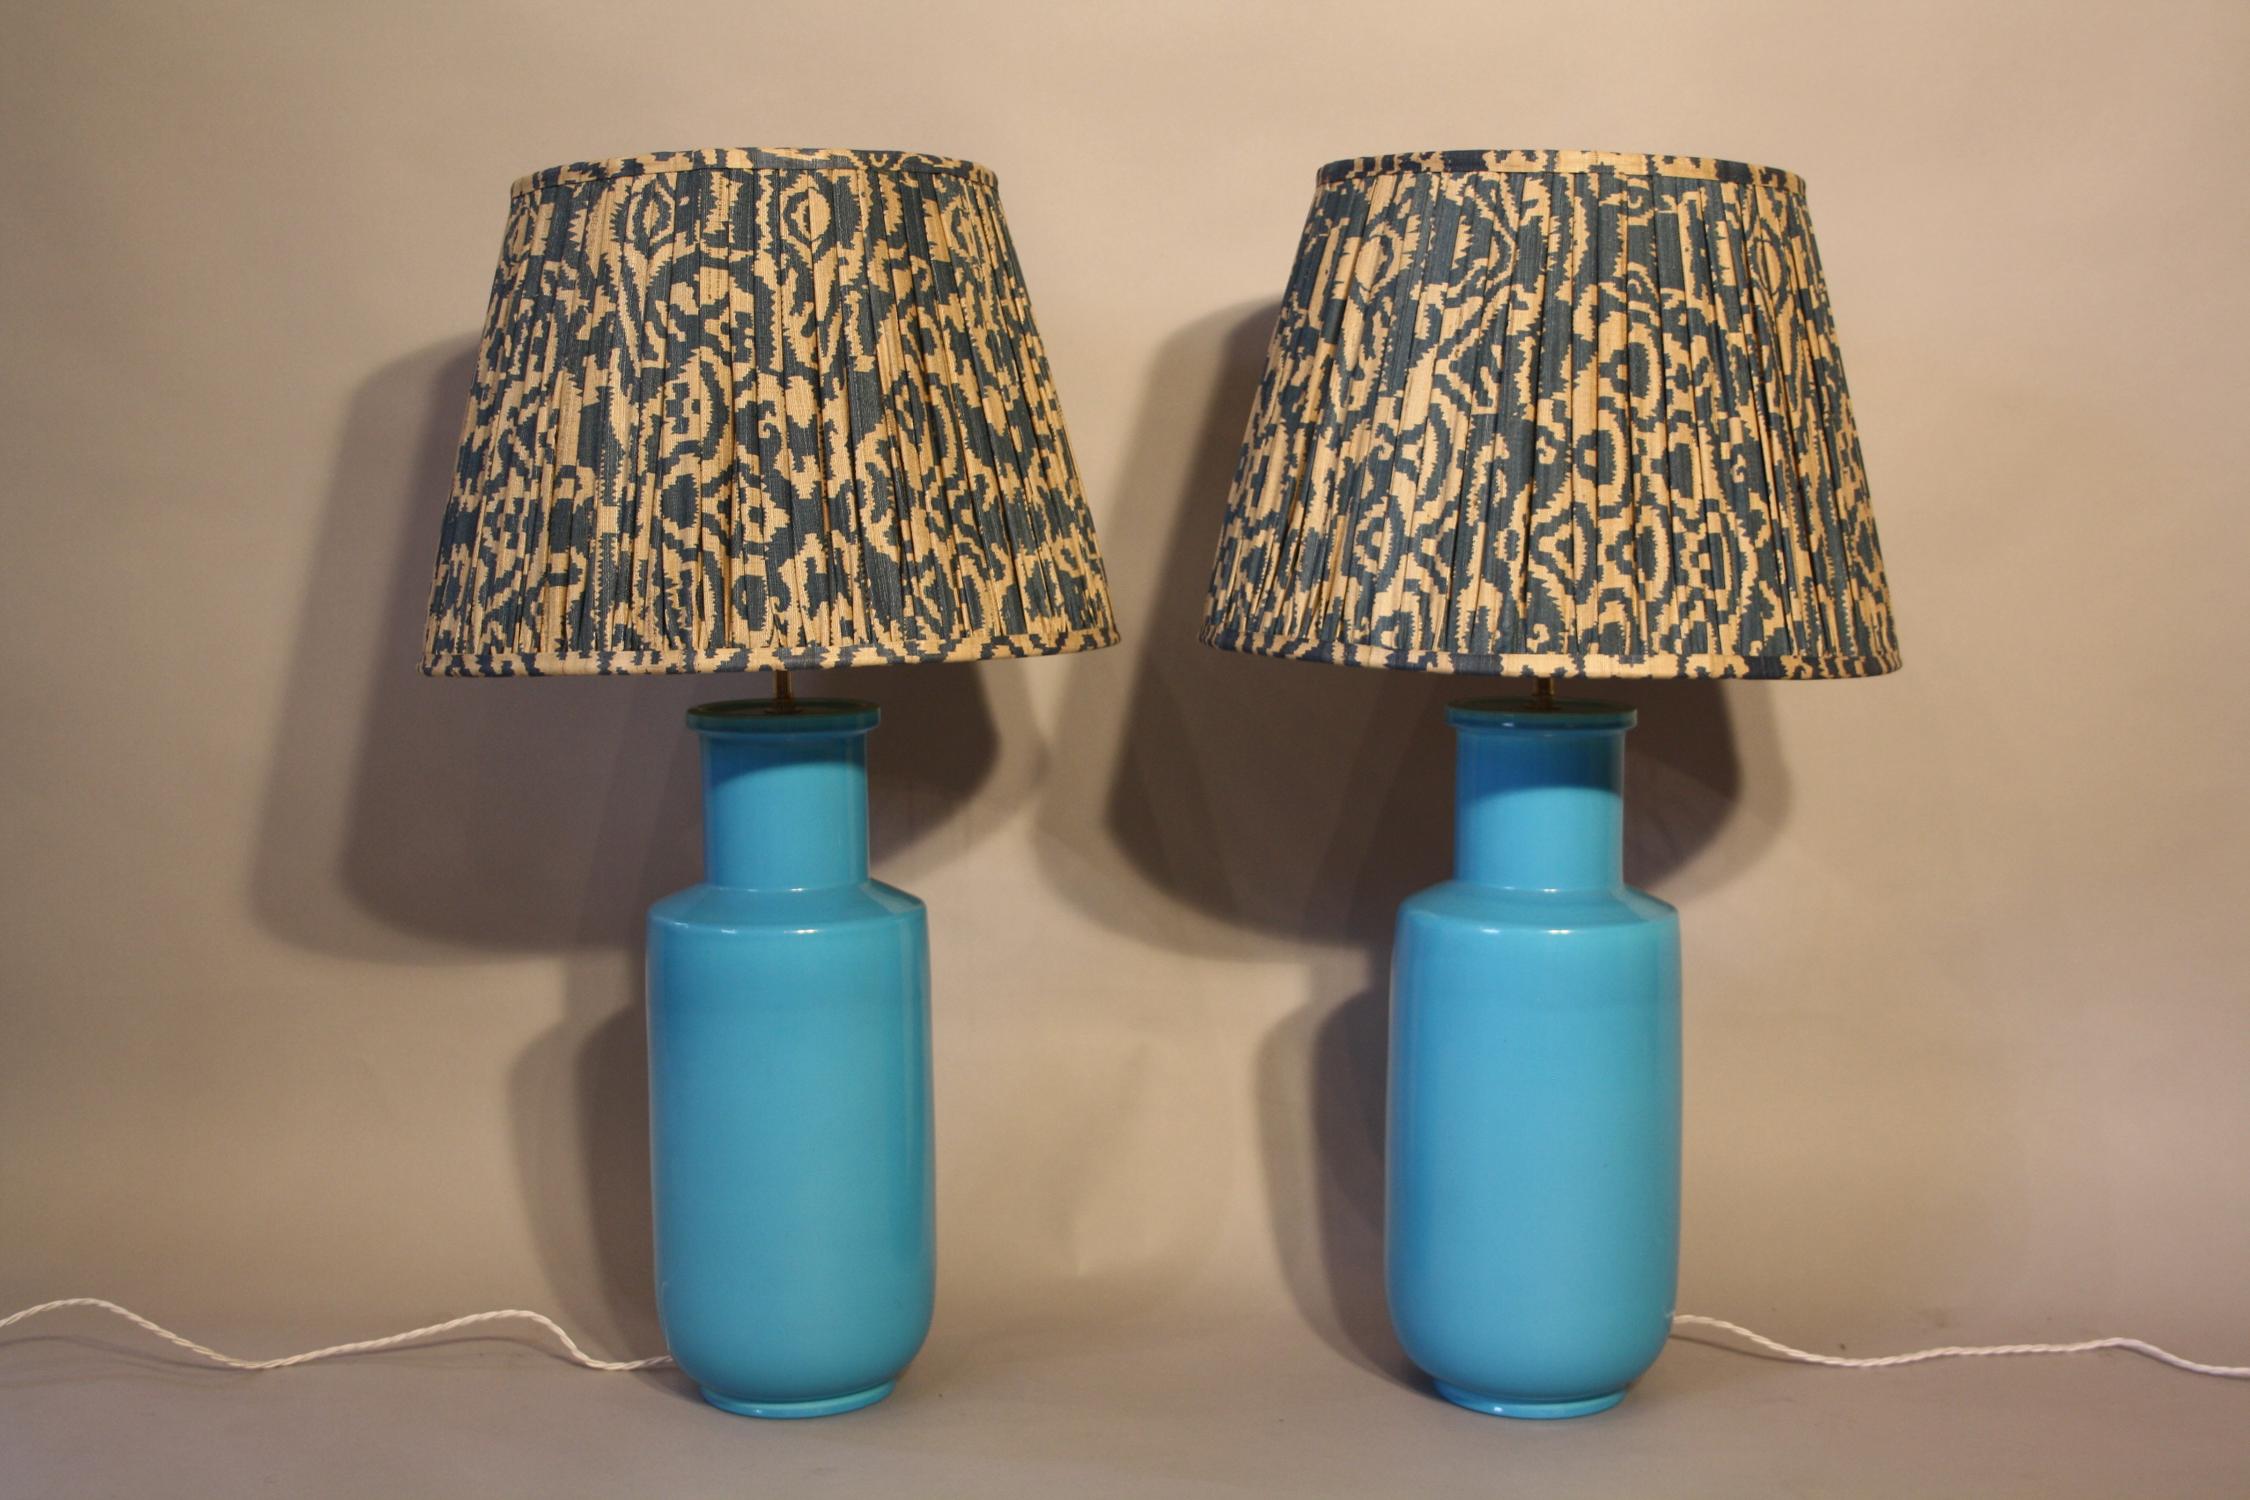 Pair of turquoise ceramic lamps